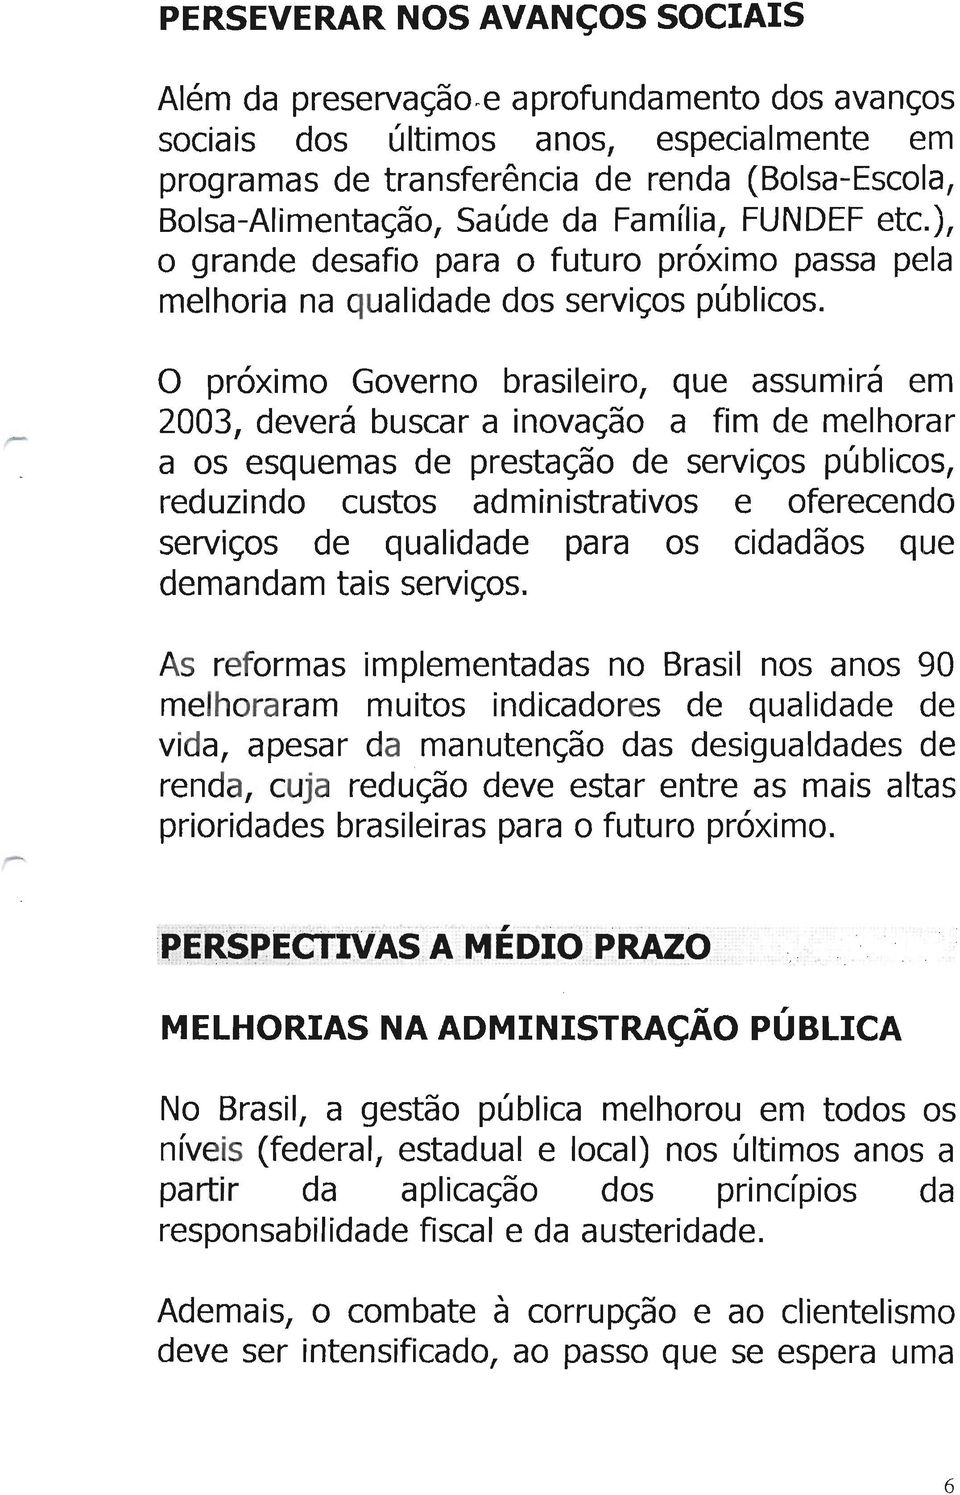 O próximo Governo brasileiro, que assumirá em 2003, deverá buscar a inovação a fim de melhorar a os esquemas de prestação de serviços públicos, reduzindo custos administrativos e oferecendo serviços